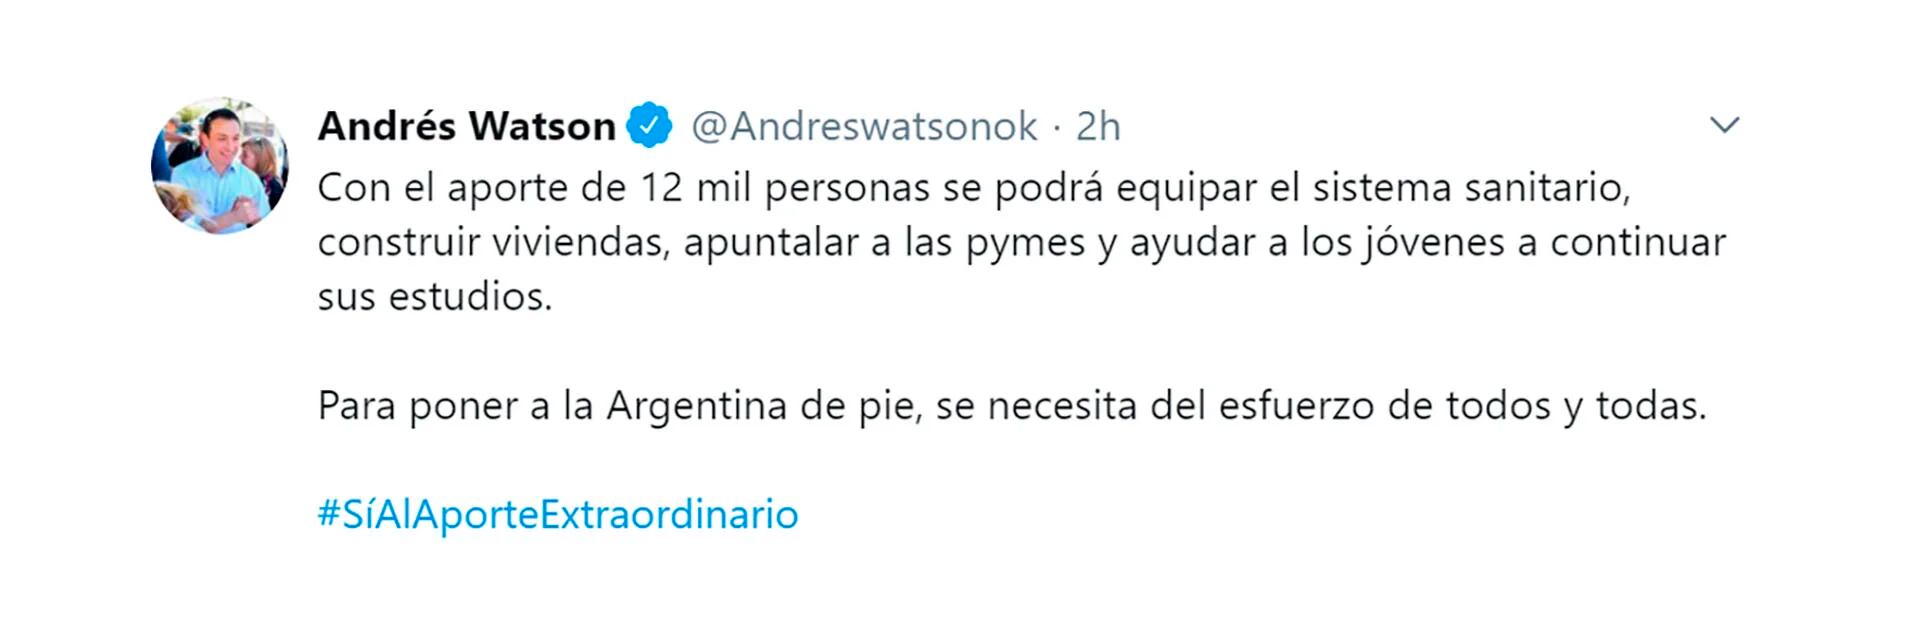 El tuit del intendente Andrés Watson en respaldo al impuesto a la riqueza
